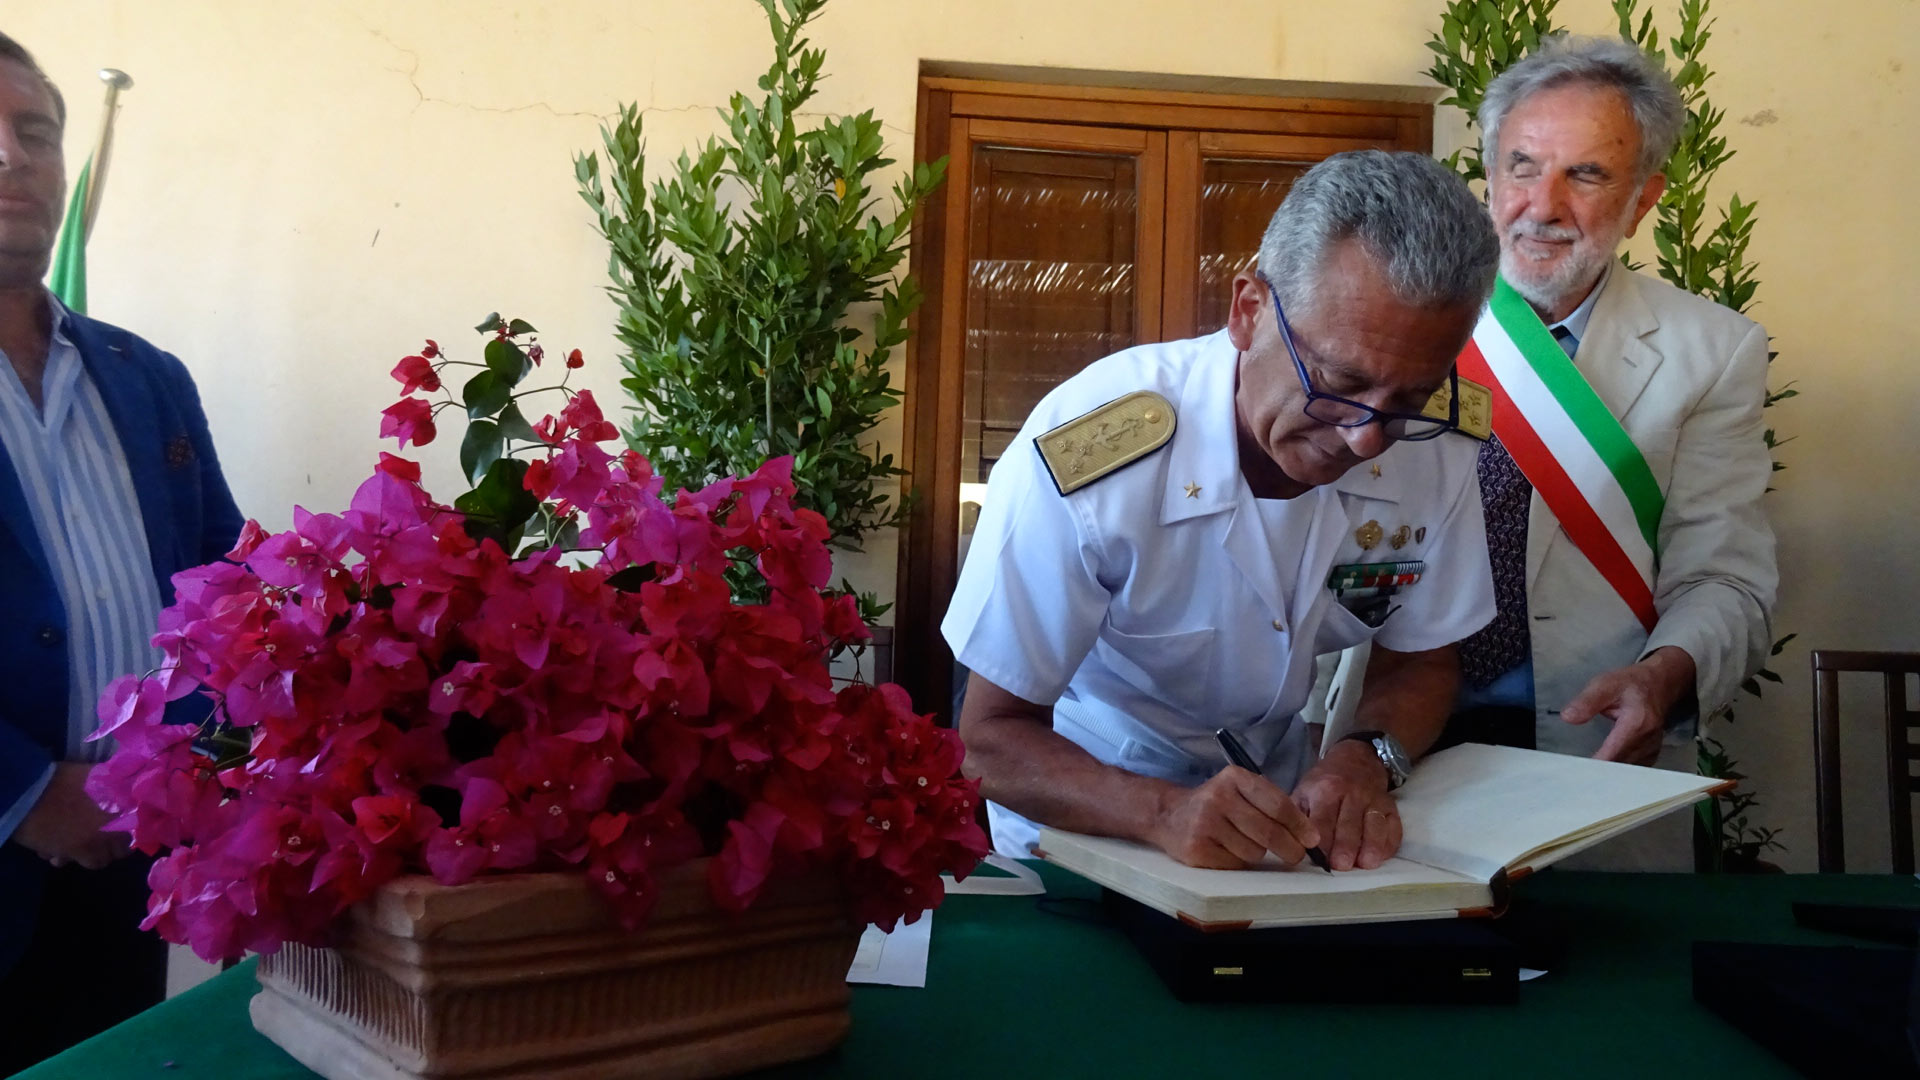 Cittadinanza onorario del comune di Leni all'Ammiraglio Pettorino